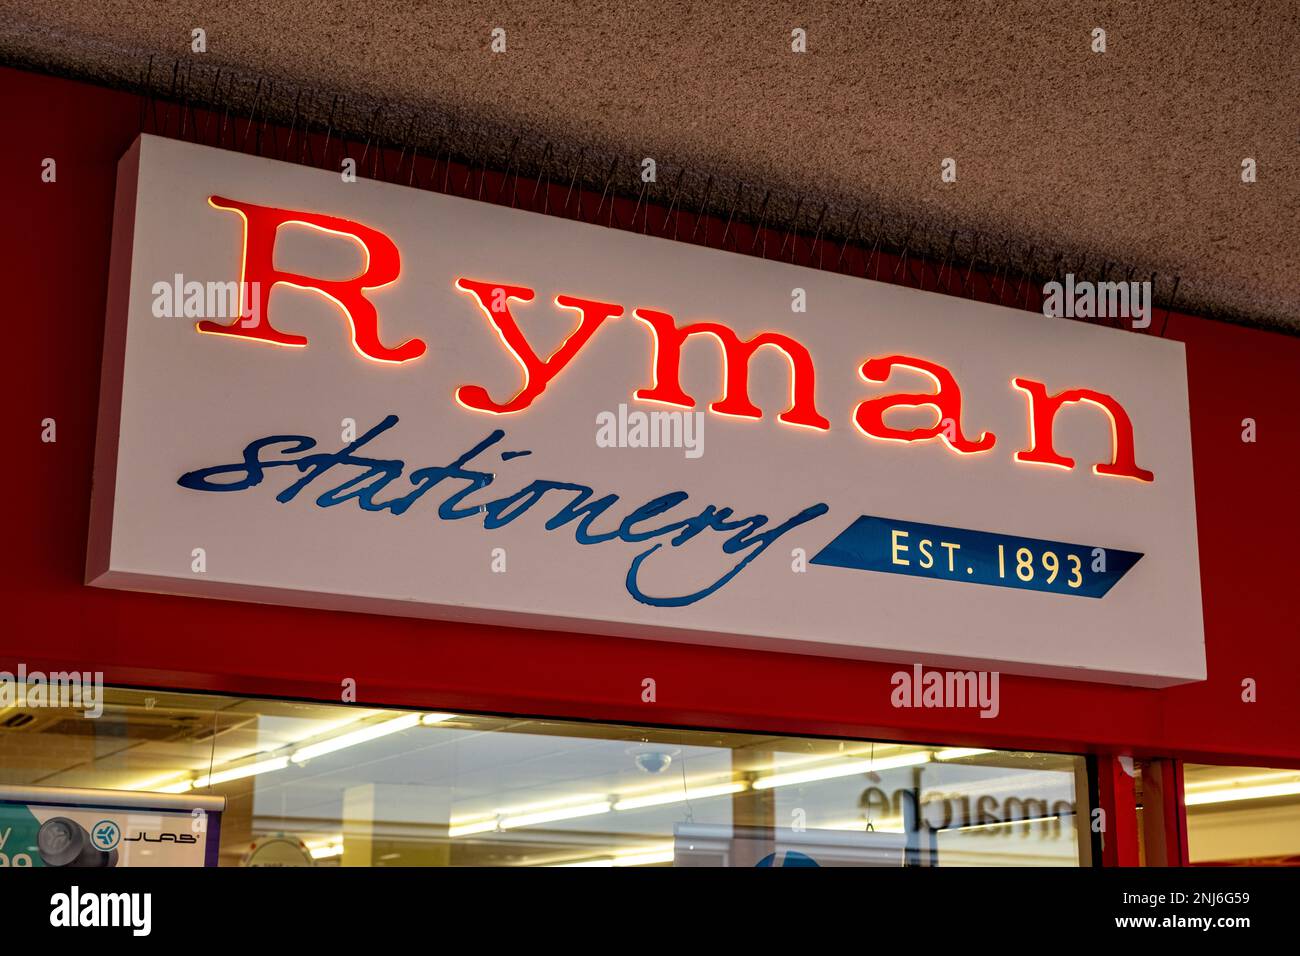 Ryman stationary sign UK Stock Photo